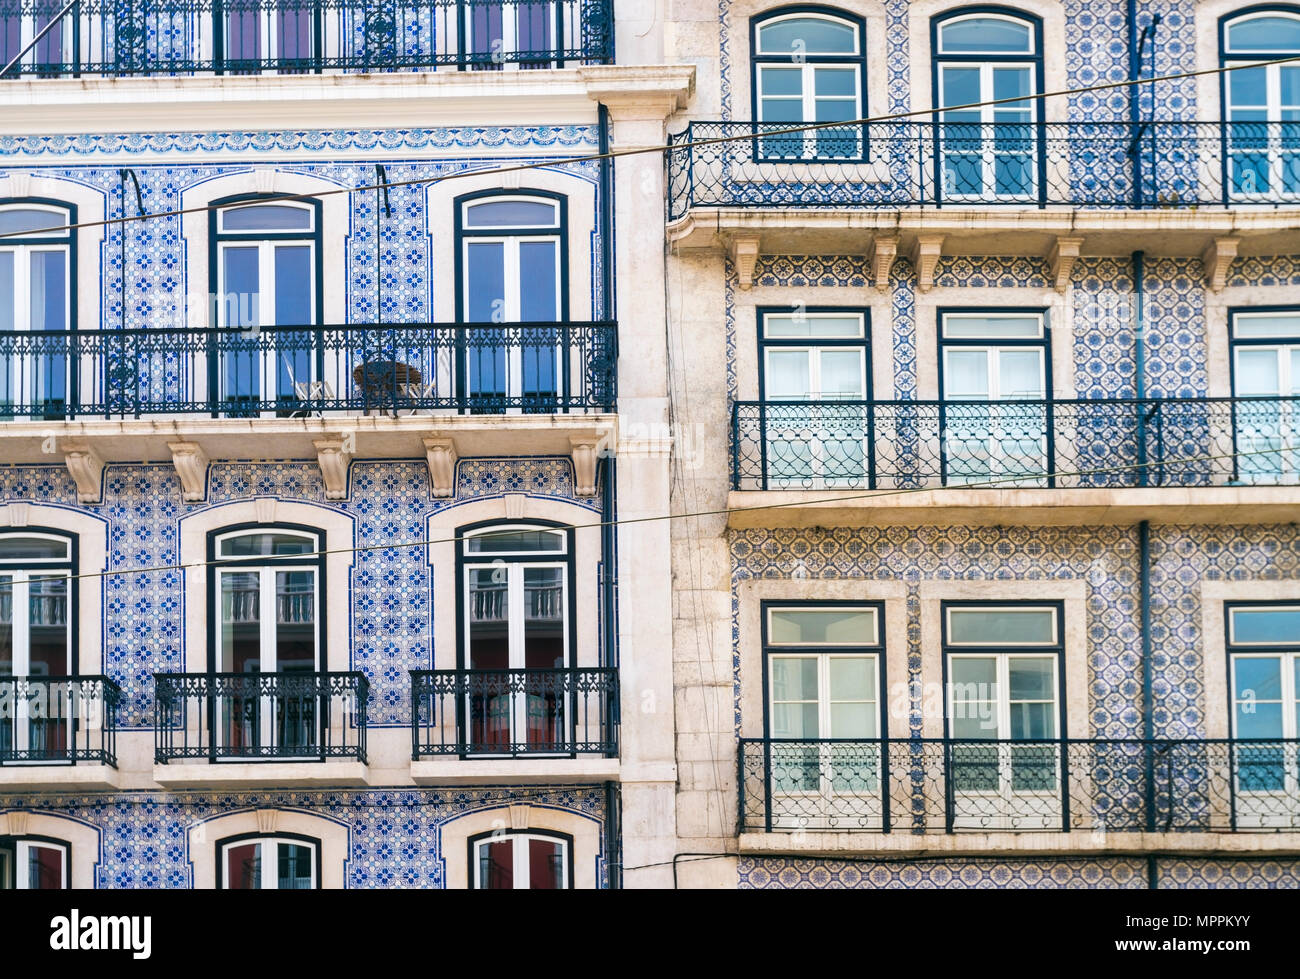 Portugal, Lisbonne, deux façades de maisons multi-familiales, vue partielle Banque D'Images